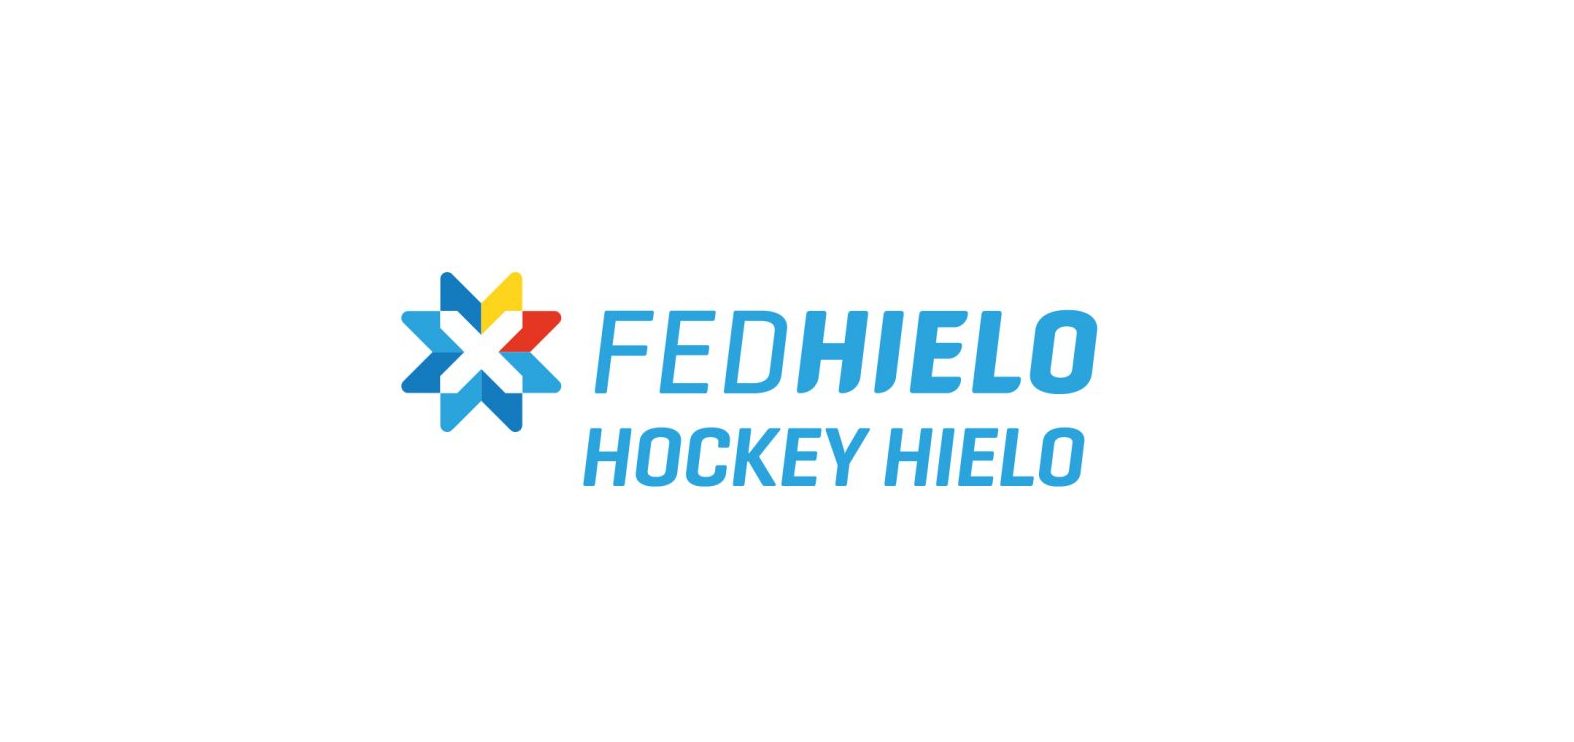 hockey hielo, Actualización del estado de las competiciones U20, U18 y U15 de hockey hielo, Real Federación Española Deportes de Hielo